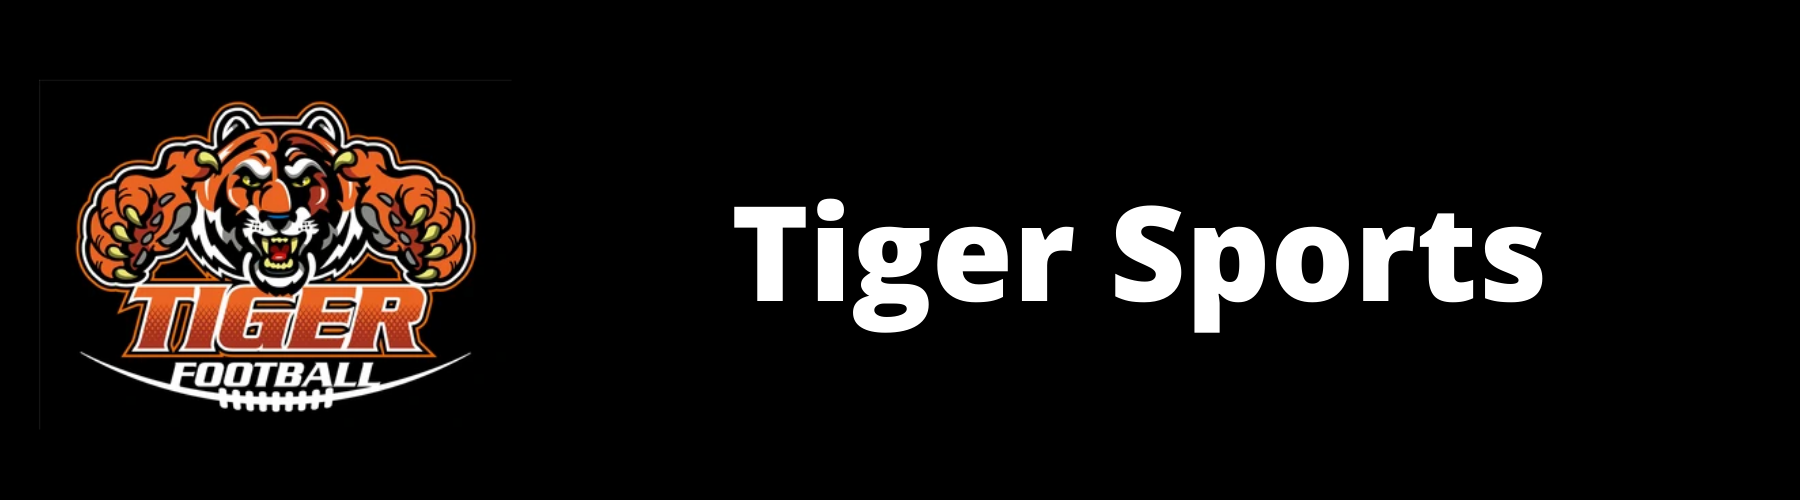 tiger sports